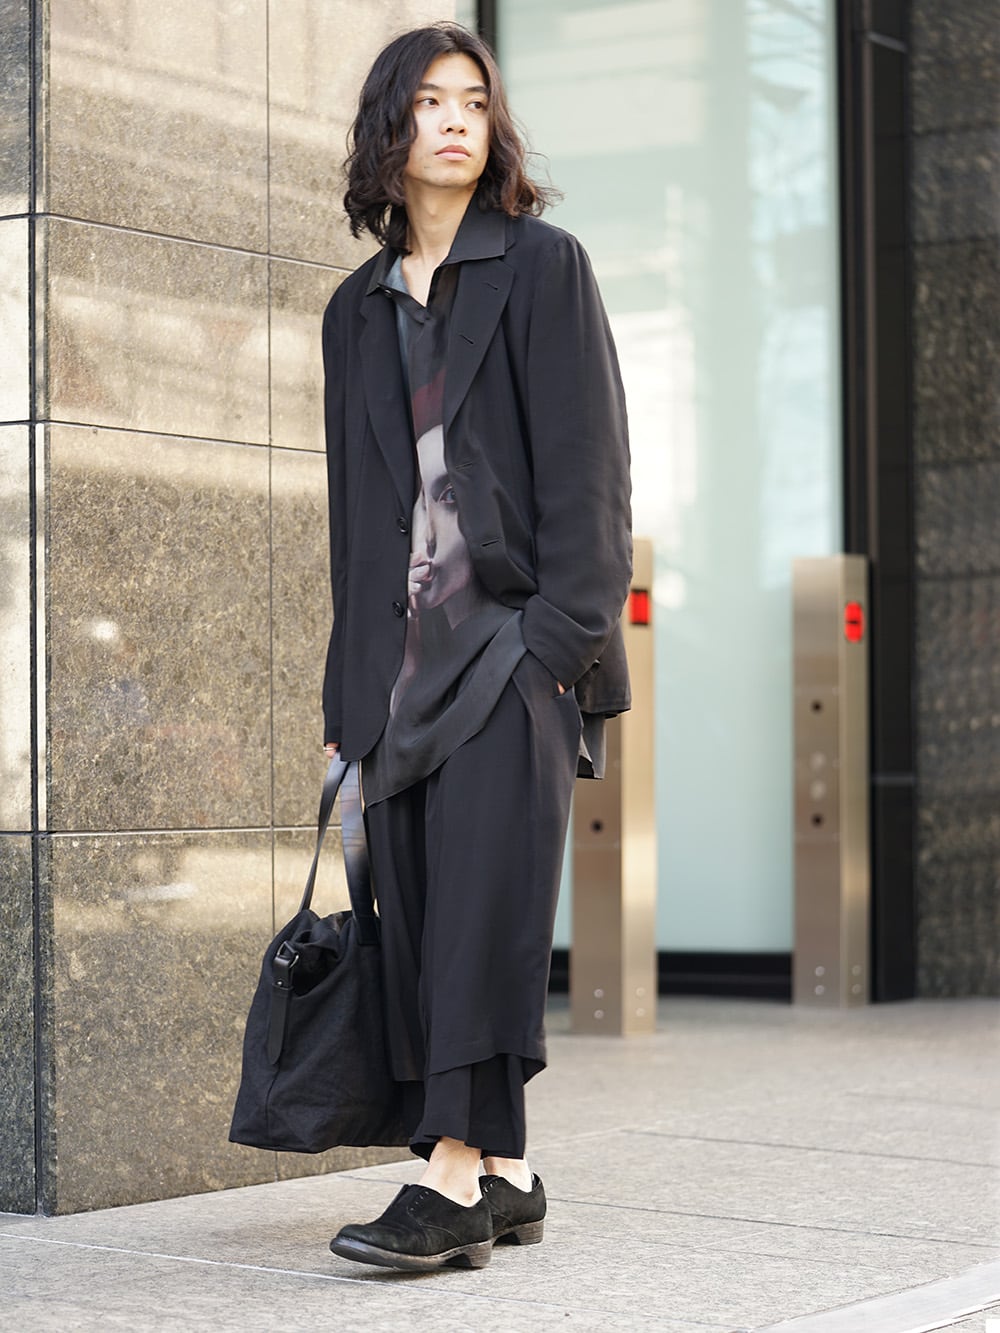 Yohji Yamamoto Rayon Jacket and Pants Style - FASCINATE BLOG